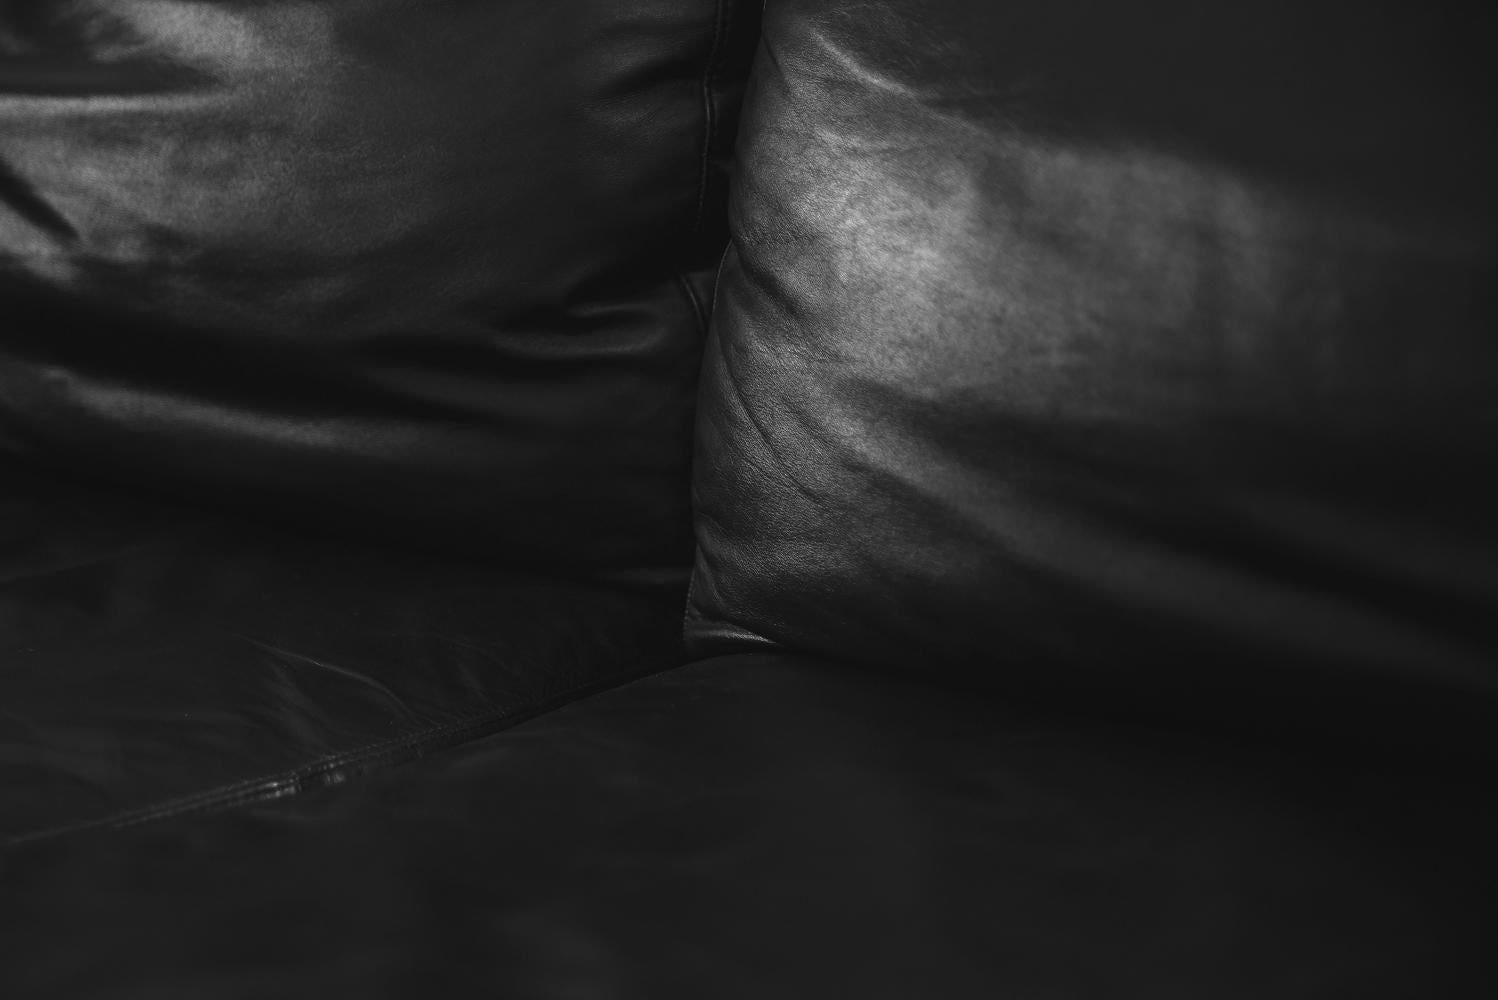 elegant leather sofa